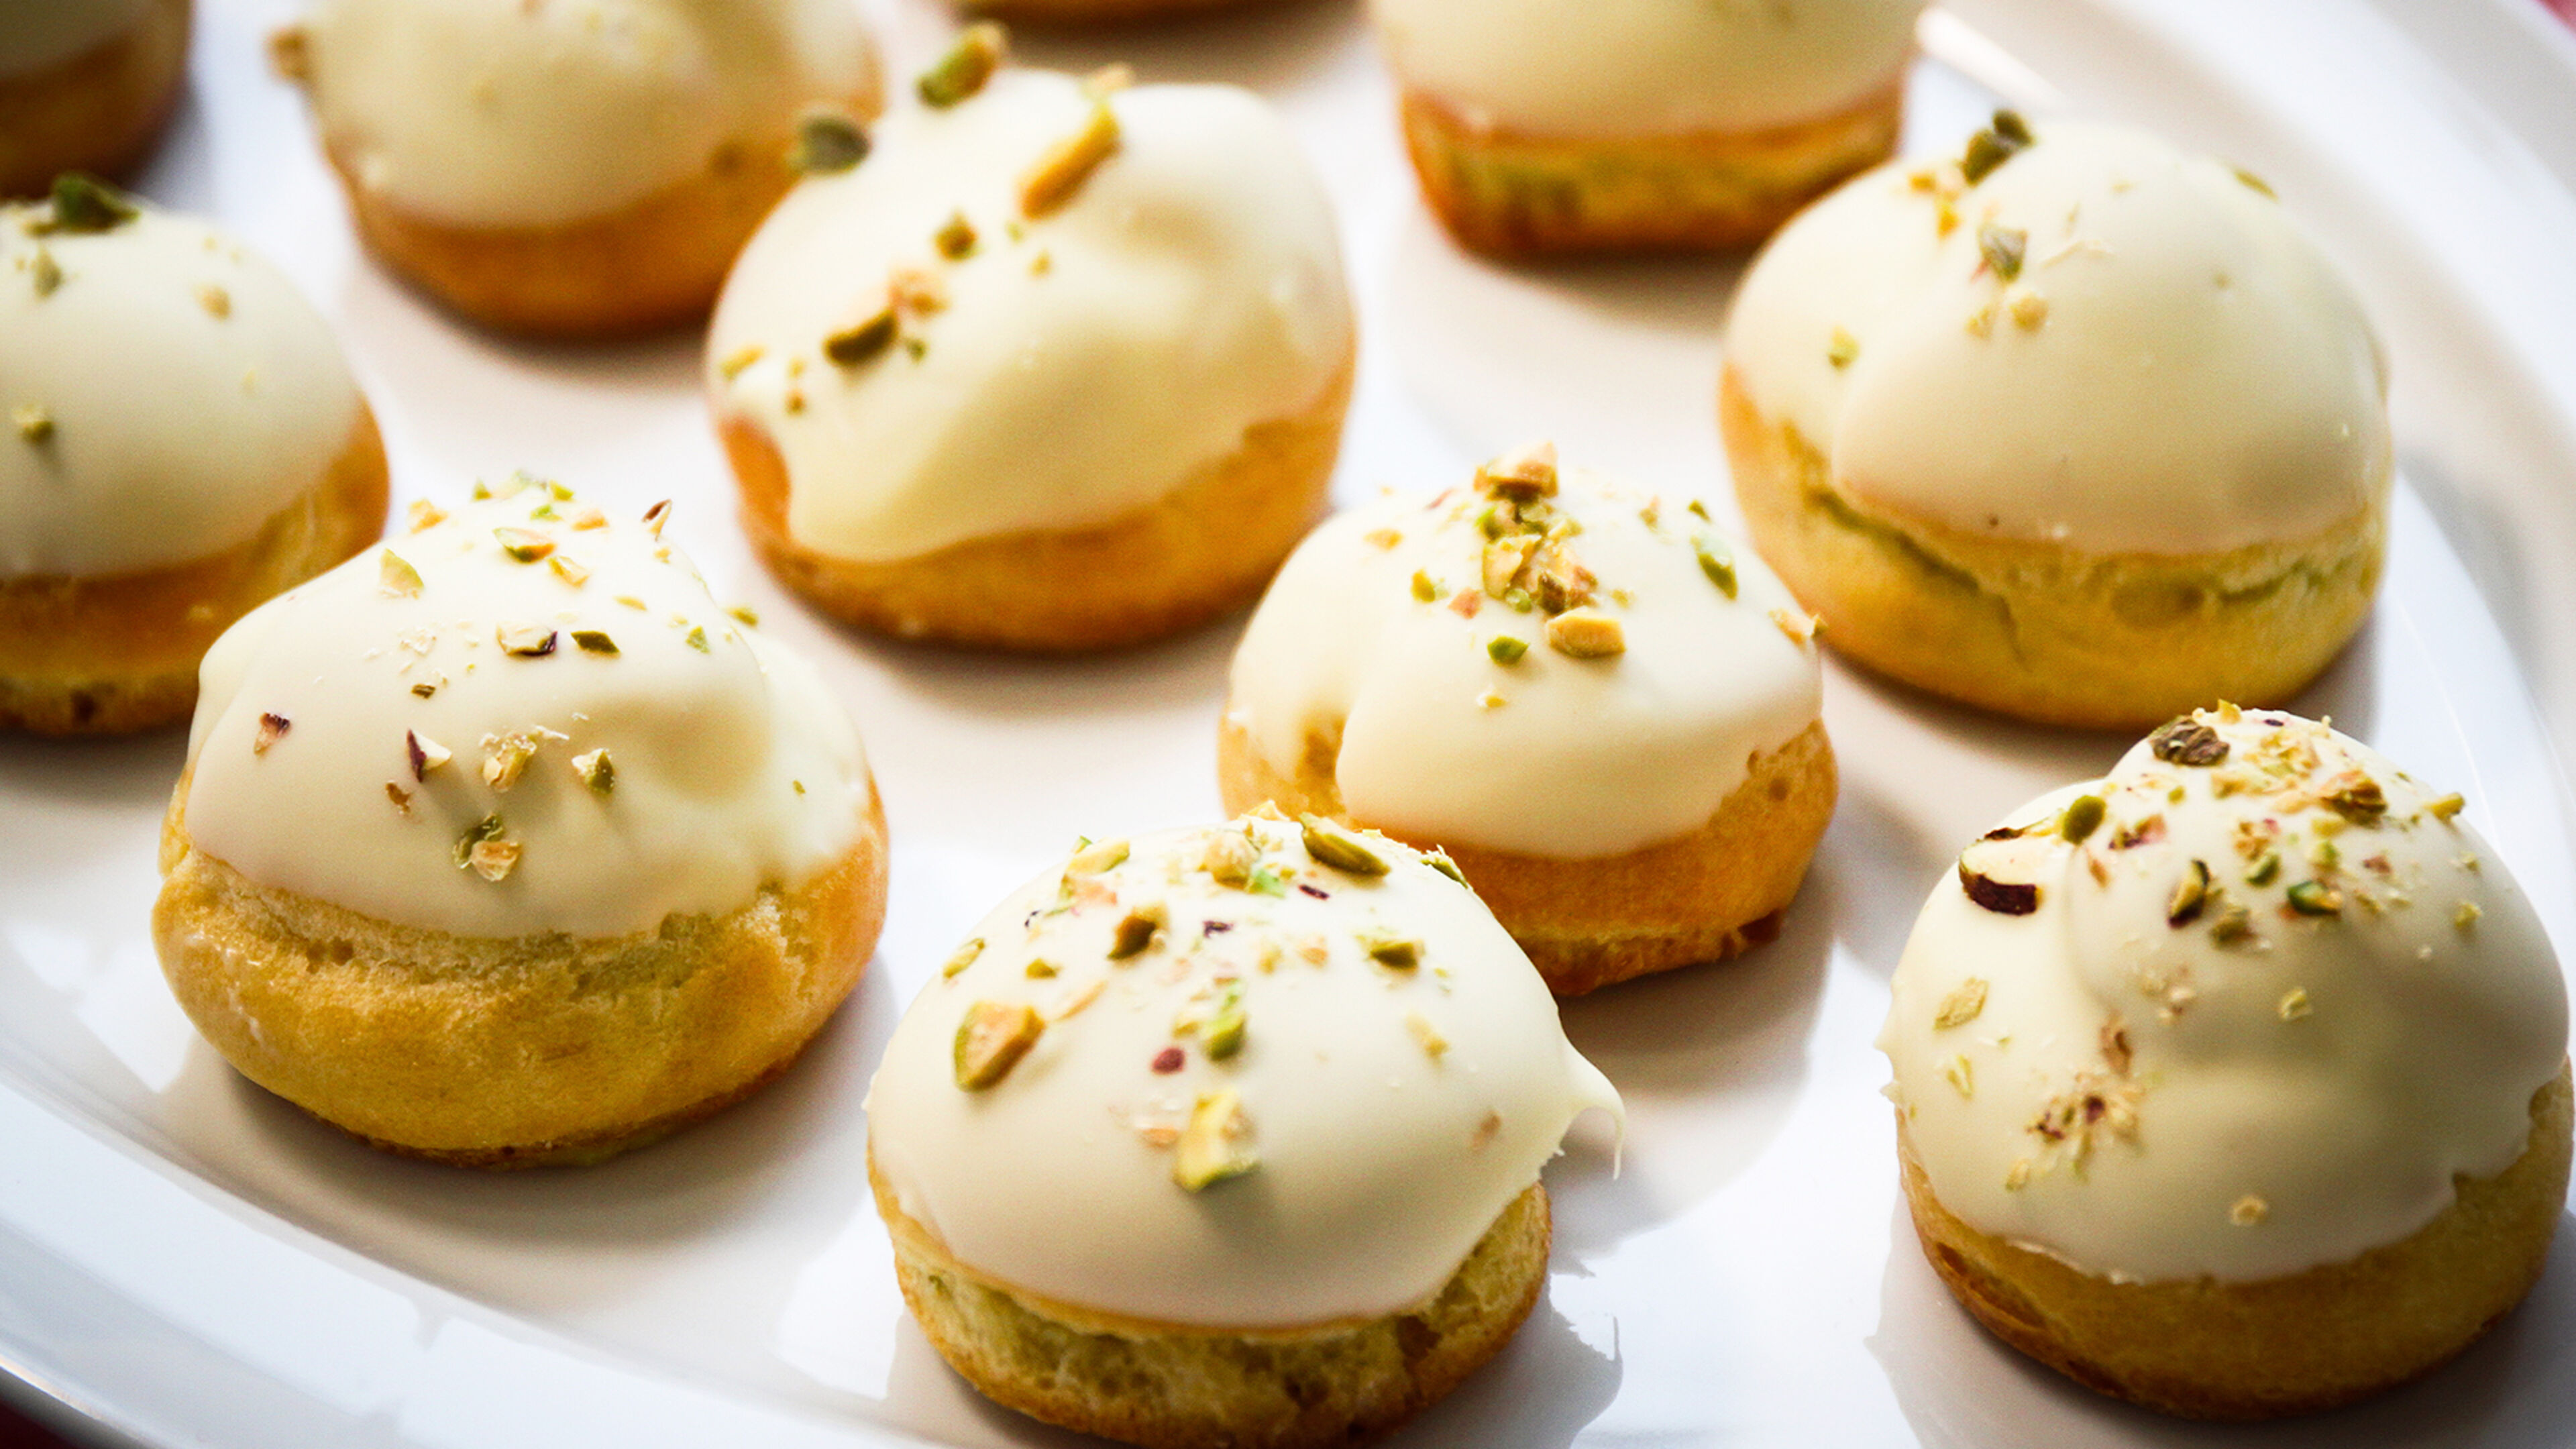 Elegantes pasteles con glaseado blanco y pistachos, presentados en una bandeja blanca.